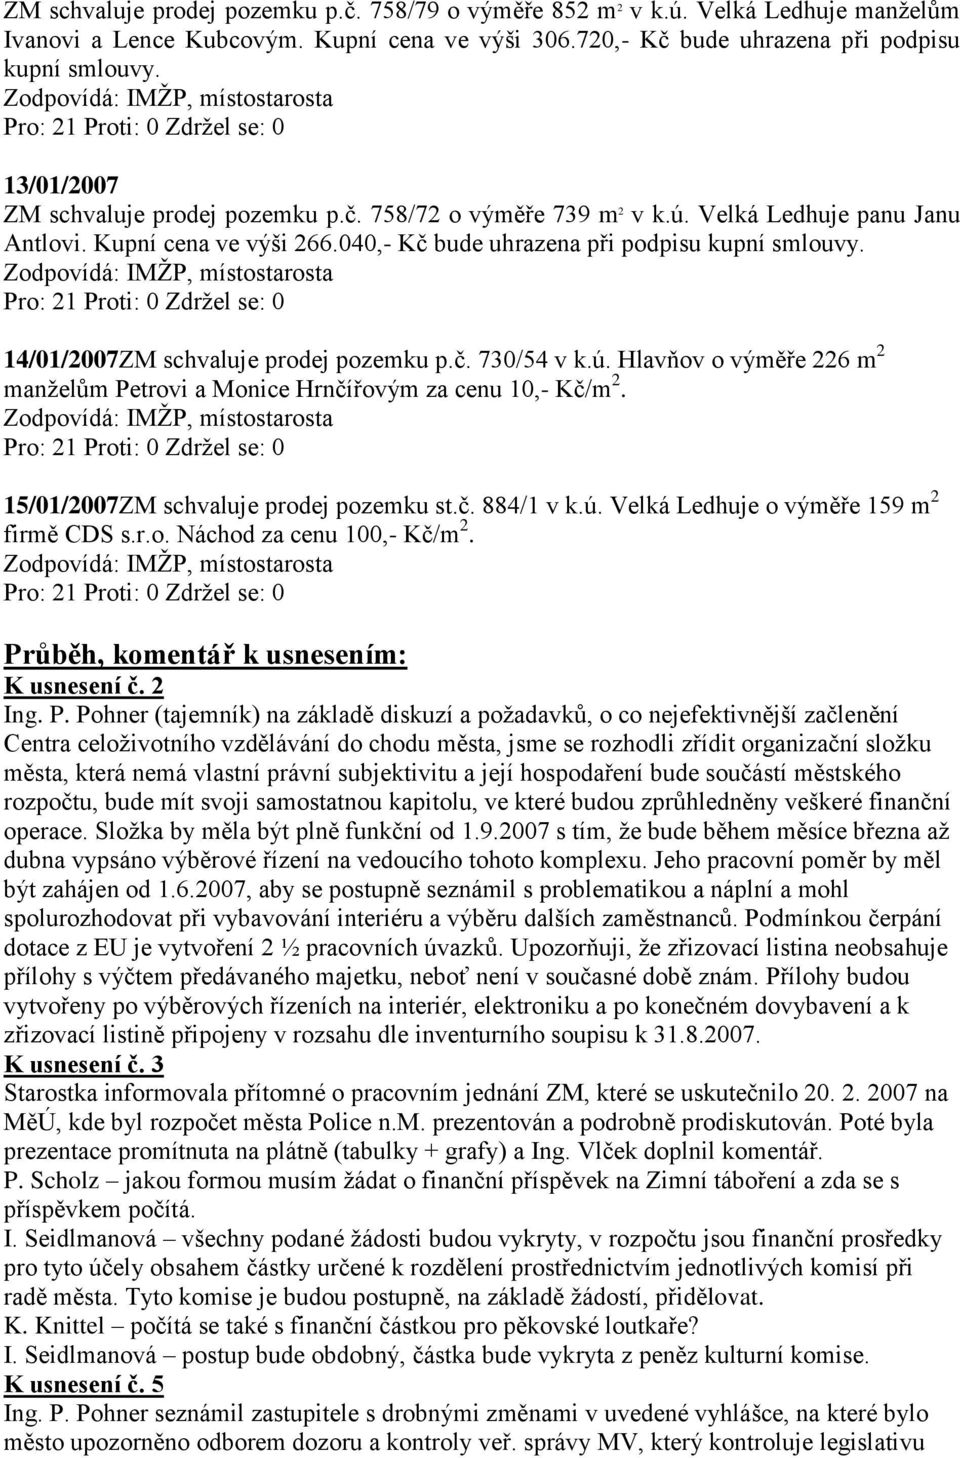 14/01/2007ZM schvaluje prodej pozemku p.č. 730/54 v k.ú. Hlavňov o výměře 226 m 2 manželům Petrovi a Monice Hrnčířovým za cenu 10,- Kč/m 2. 15/01/2007ZM schvaluje prodej pozemku st.č. 884/1 v k.ú. Velká Ledhuje o výměře 159 m 2 firmě CDS s.